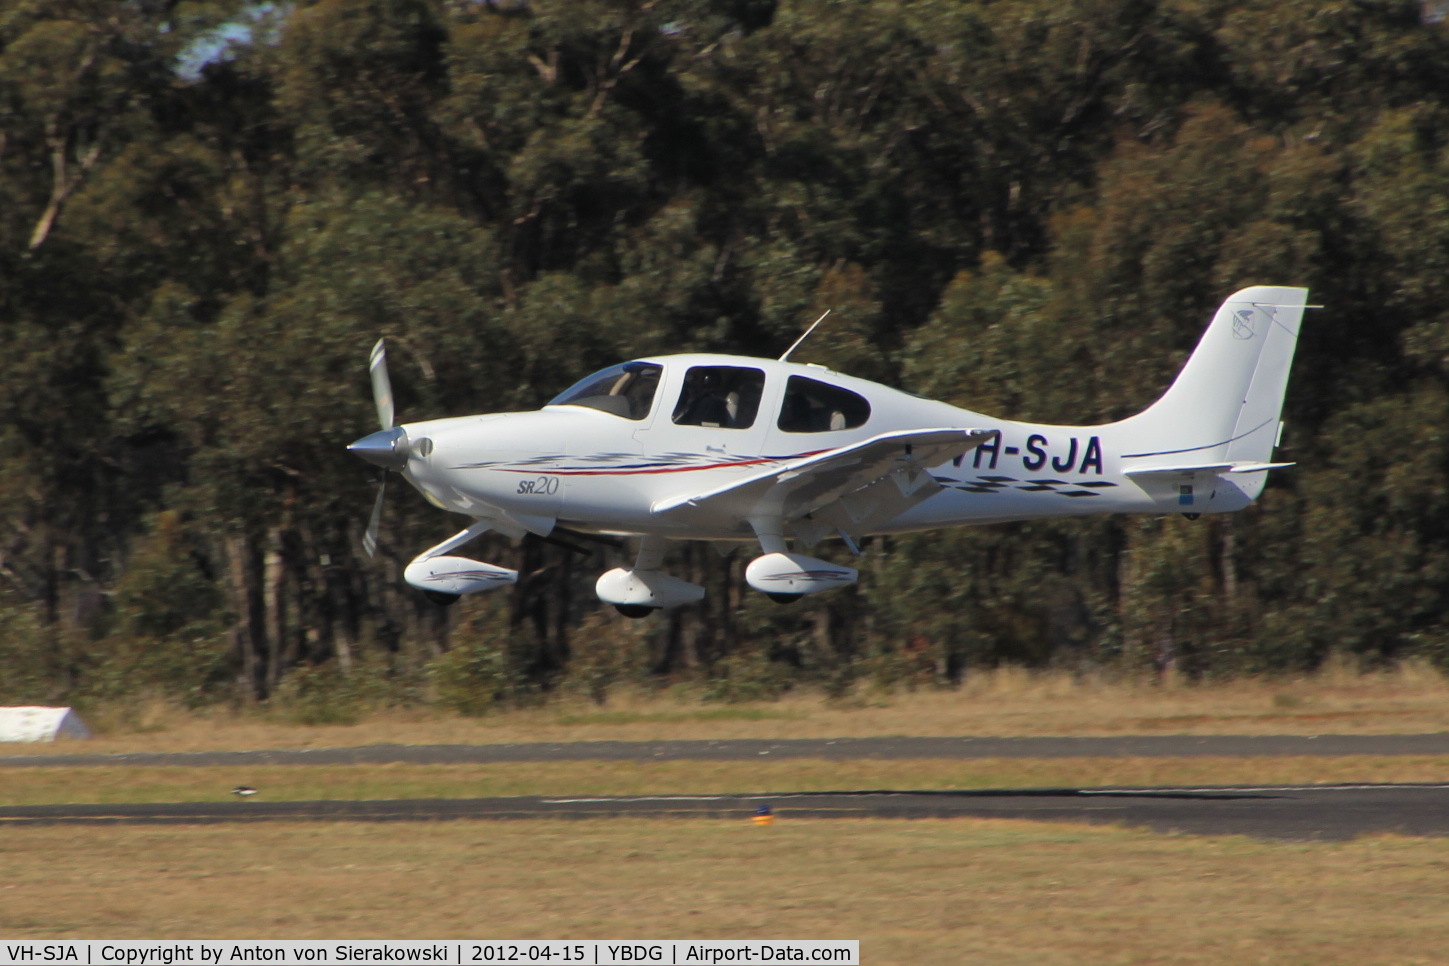 VH-SJA, 2003 Cirrus SR20 C/N 1353, VH-SJA @ YBDG Landing on 35